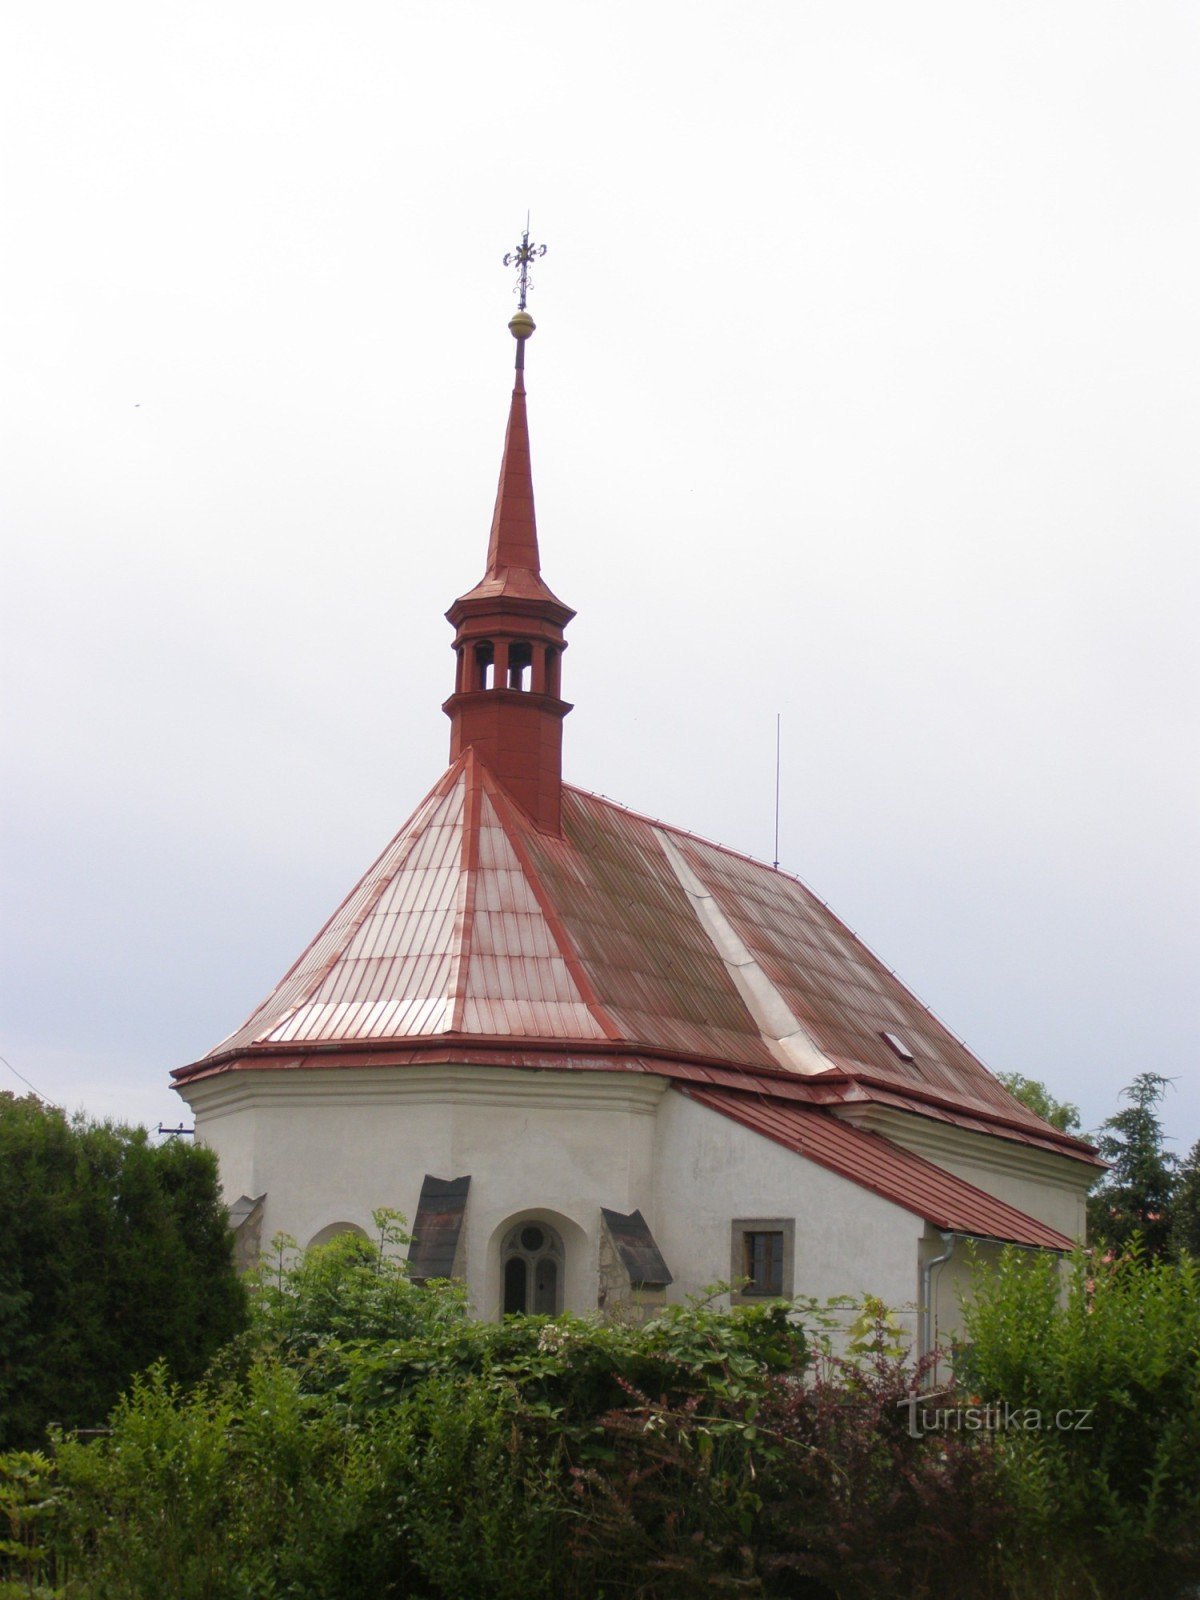 Mladějov - a Szent Giljí templom a harangtoronnyal